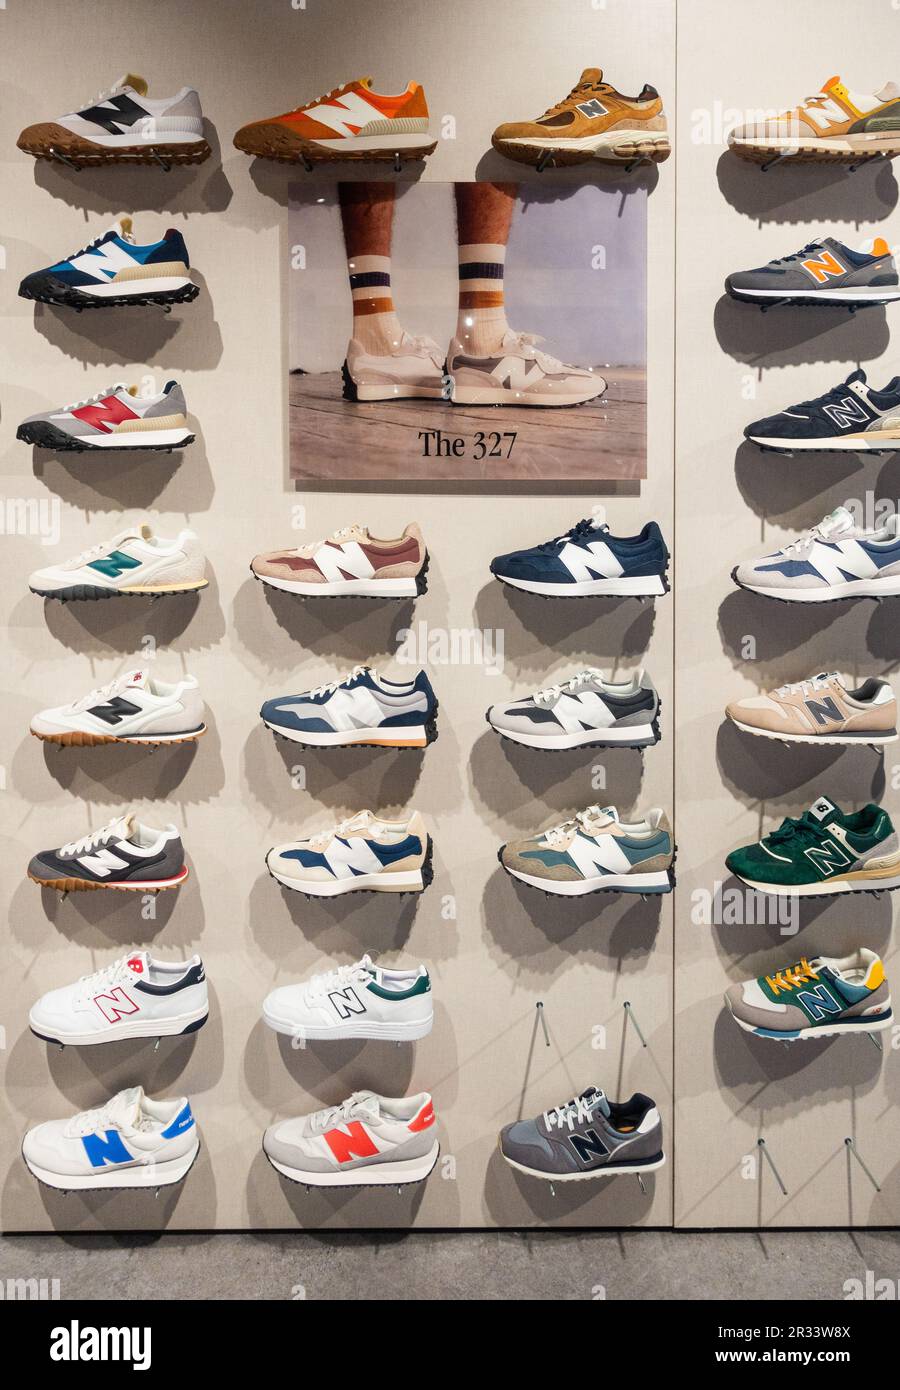 Nuovo Balance 327 scarpe da ginnastica, scarpe da ginnastica, calzature casual in negozio sportivo. Foto Stock